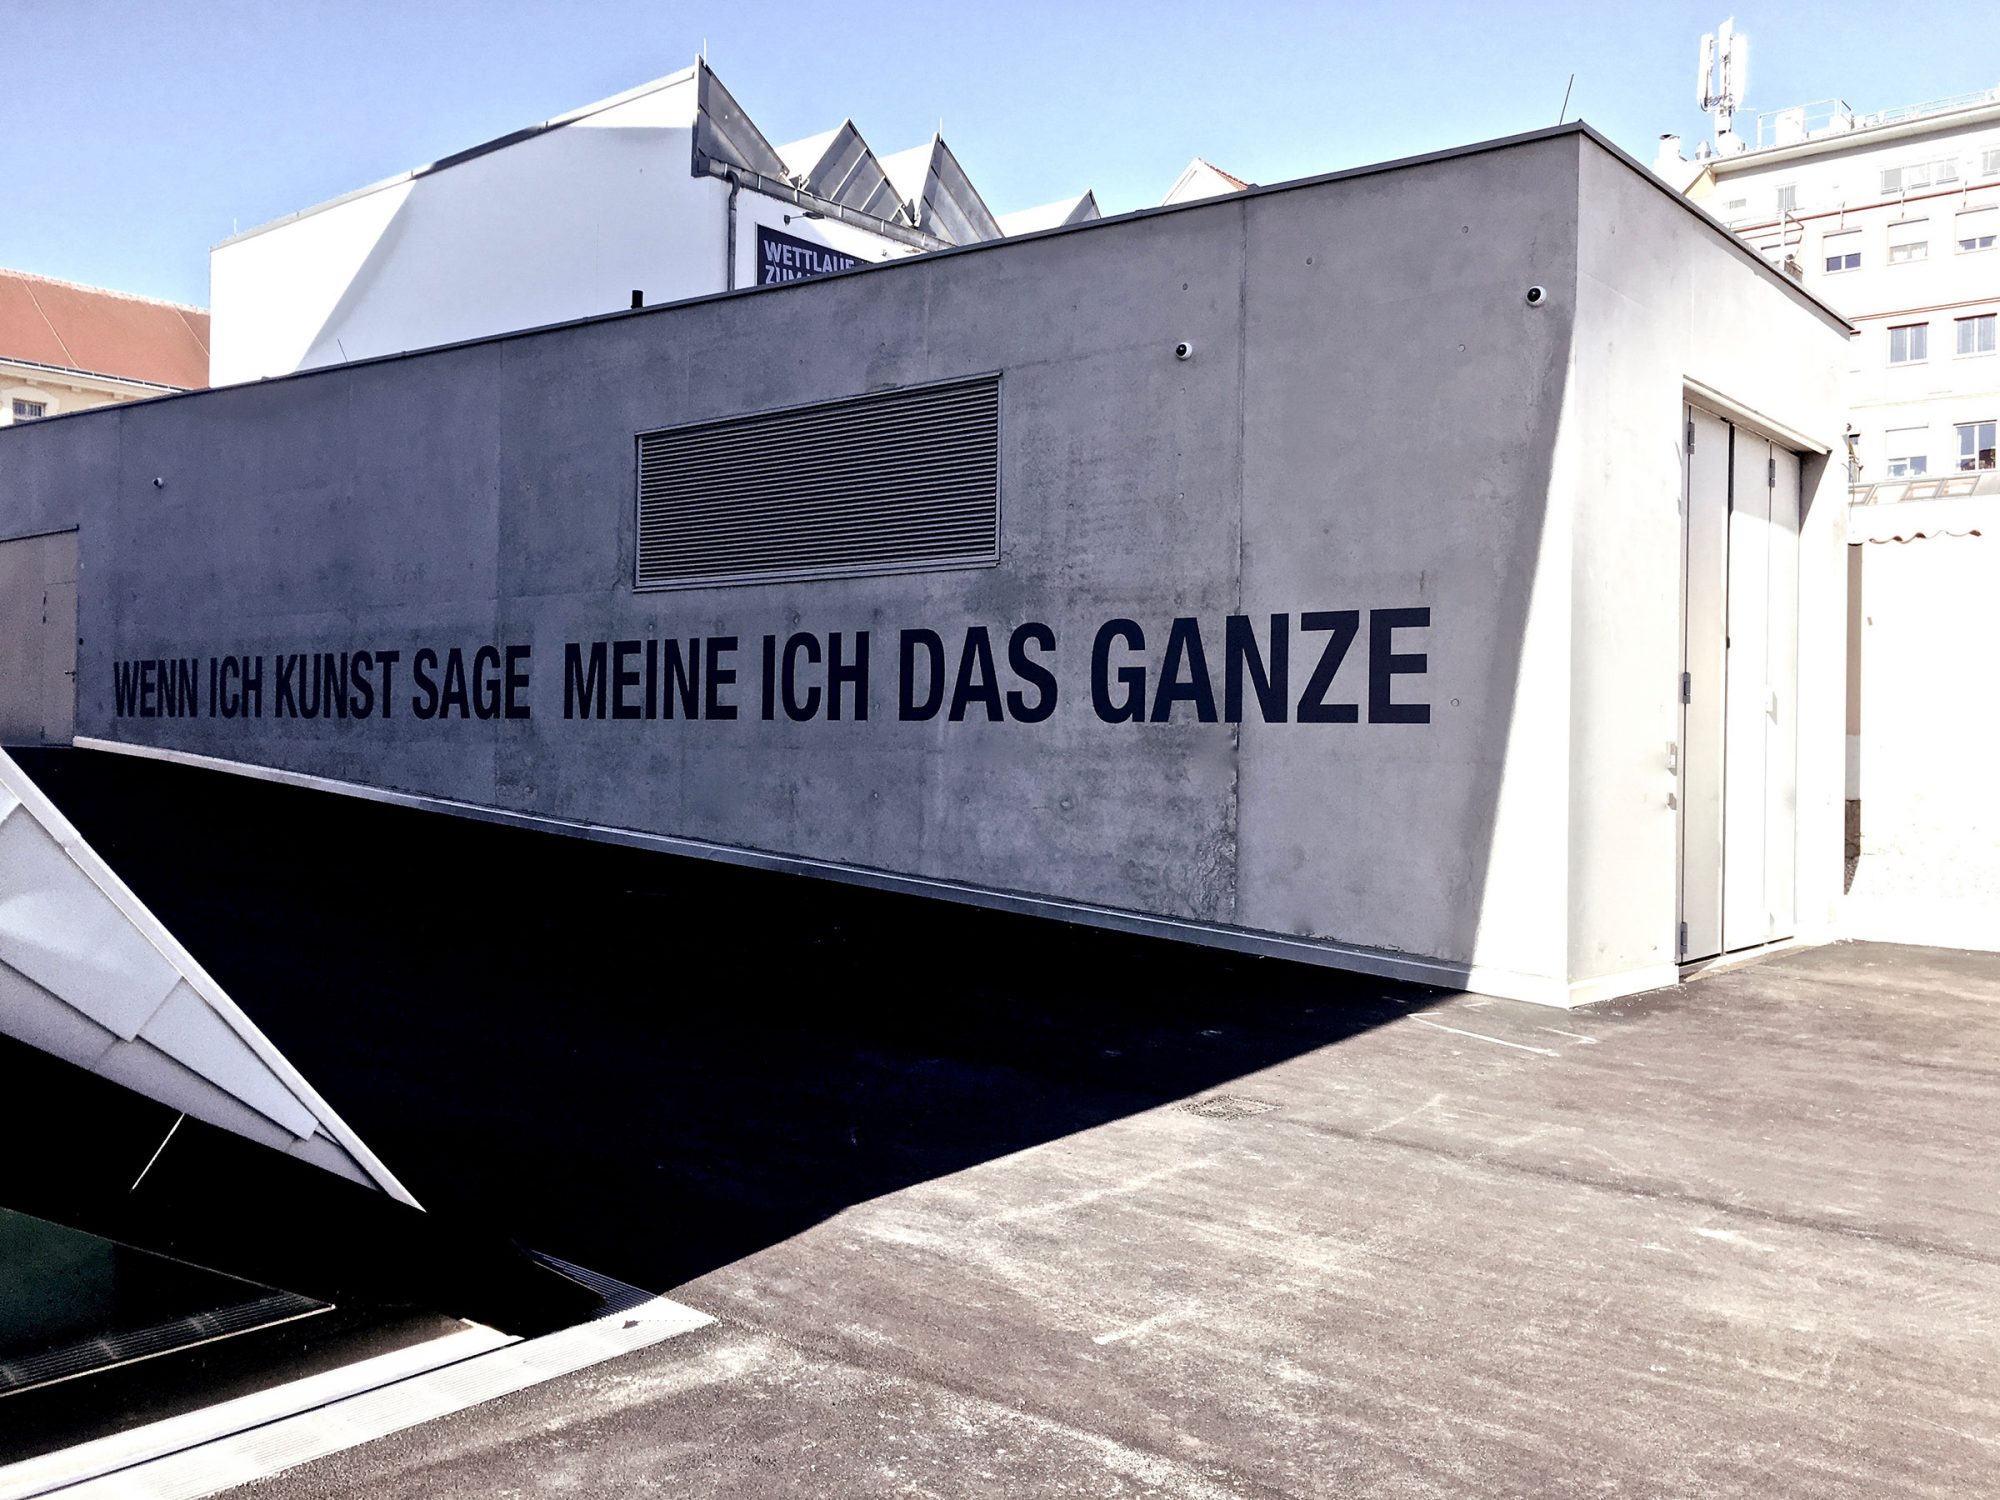 2019, Landesgalerie Niederösterreich / State Gallery of Lower Austria